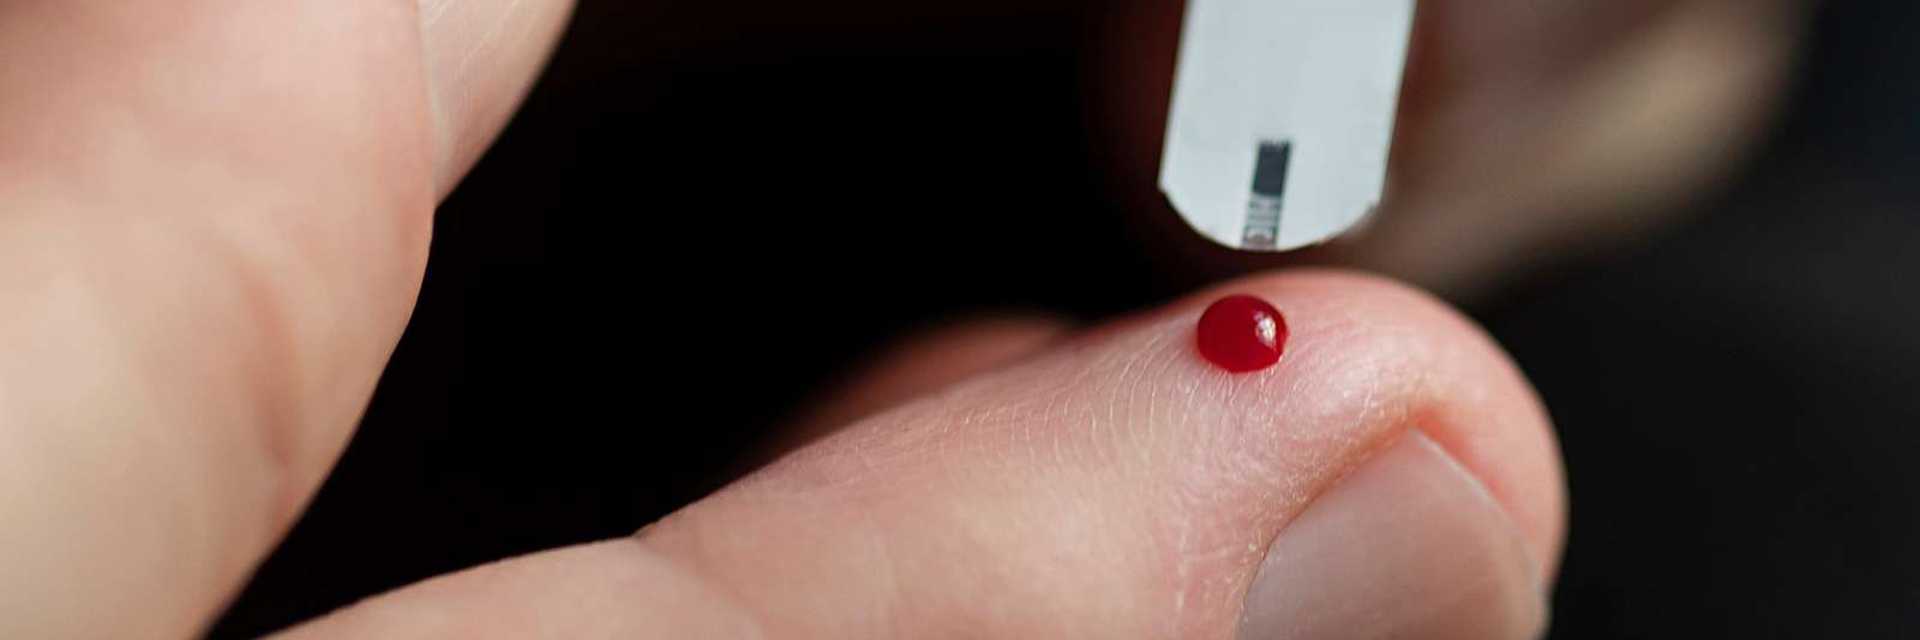 Billede af en bloddråbe på en finger